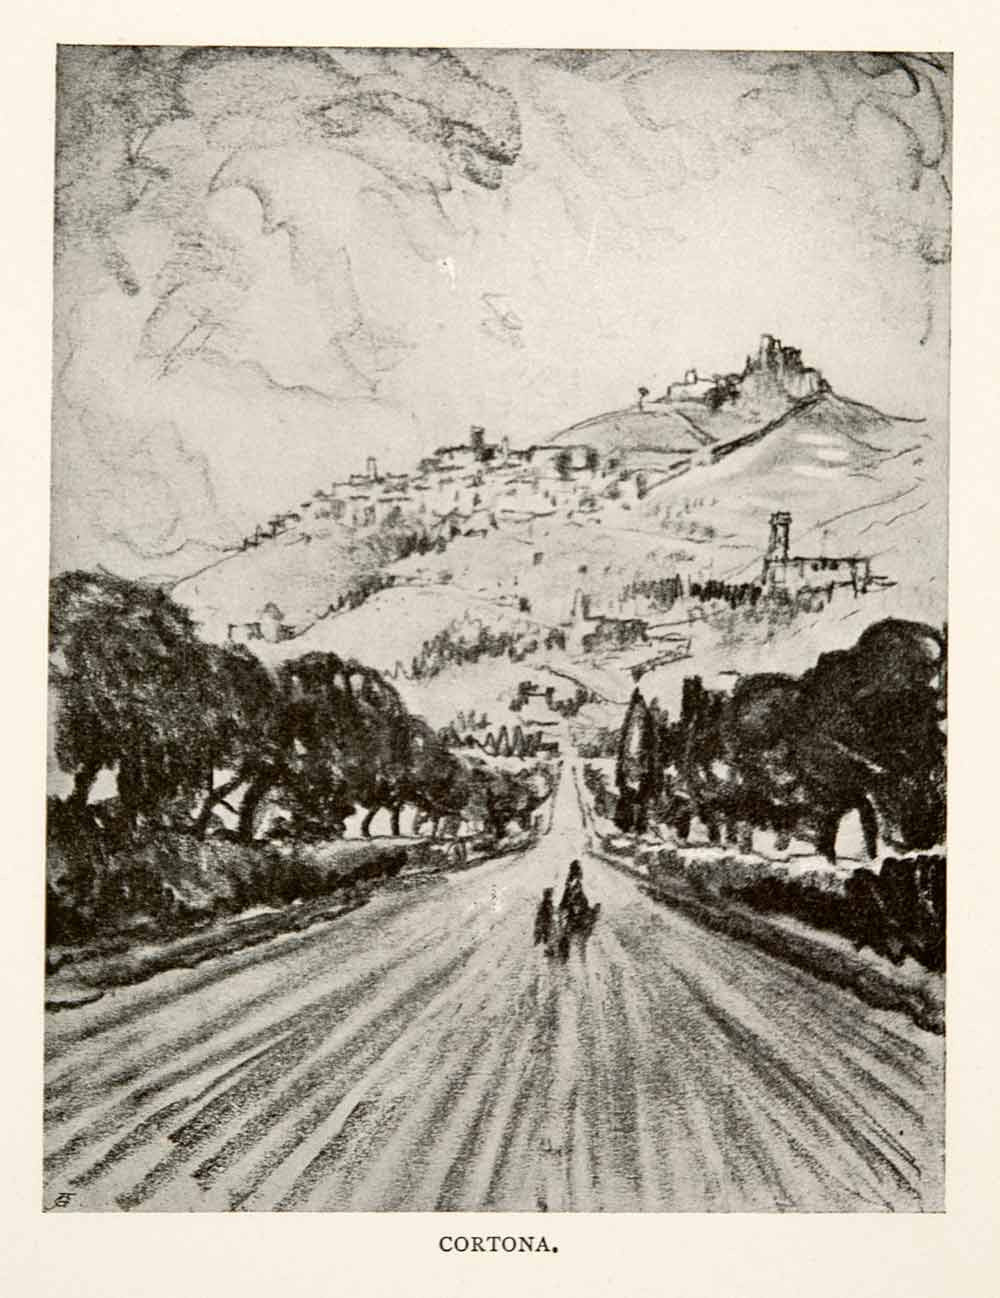 1904 Print Cortona Italy Tuscany Val di Chiana Landscape Road Joseph XGWA4 - Period Paper
